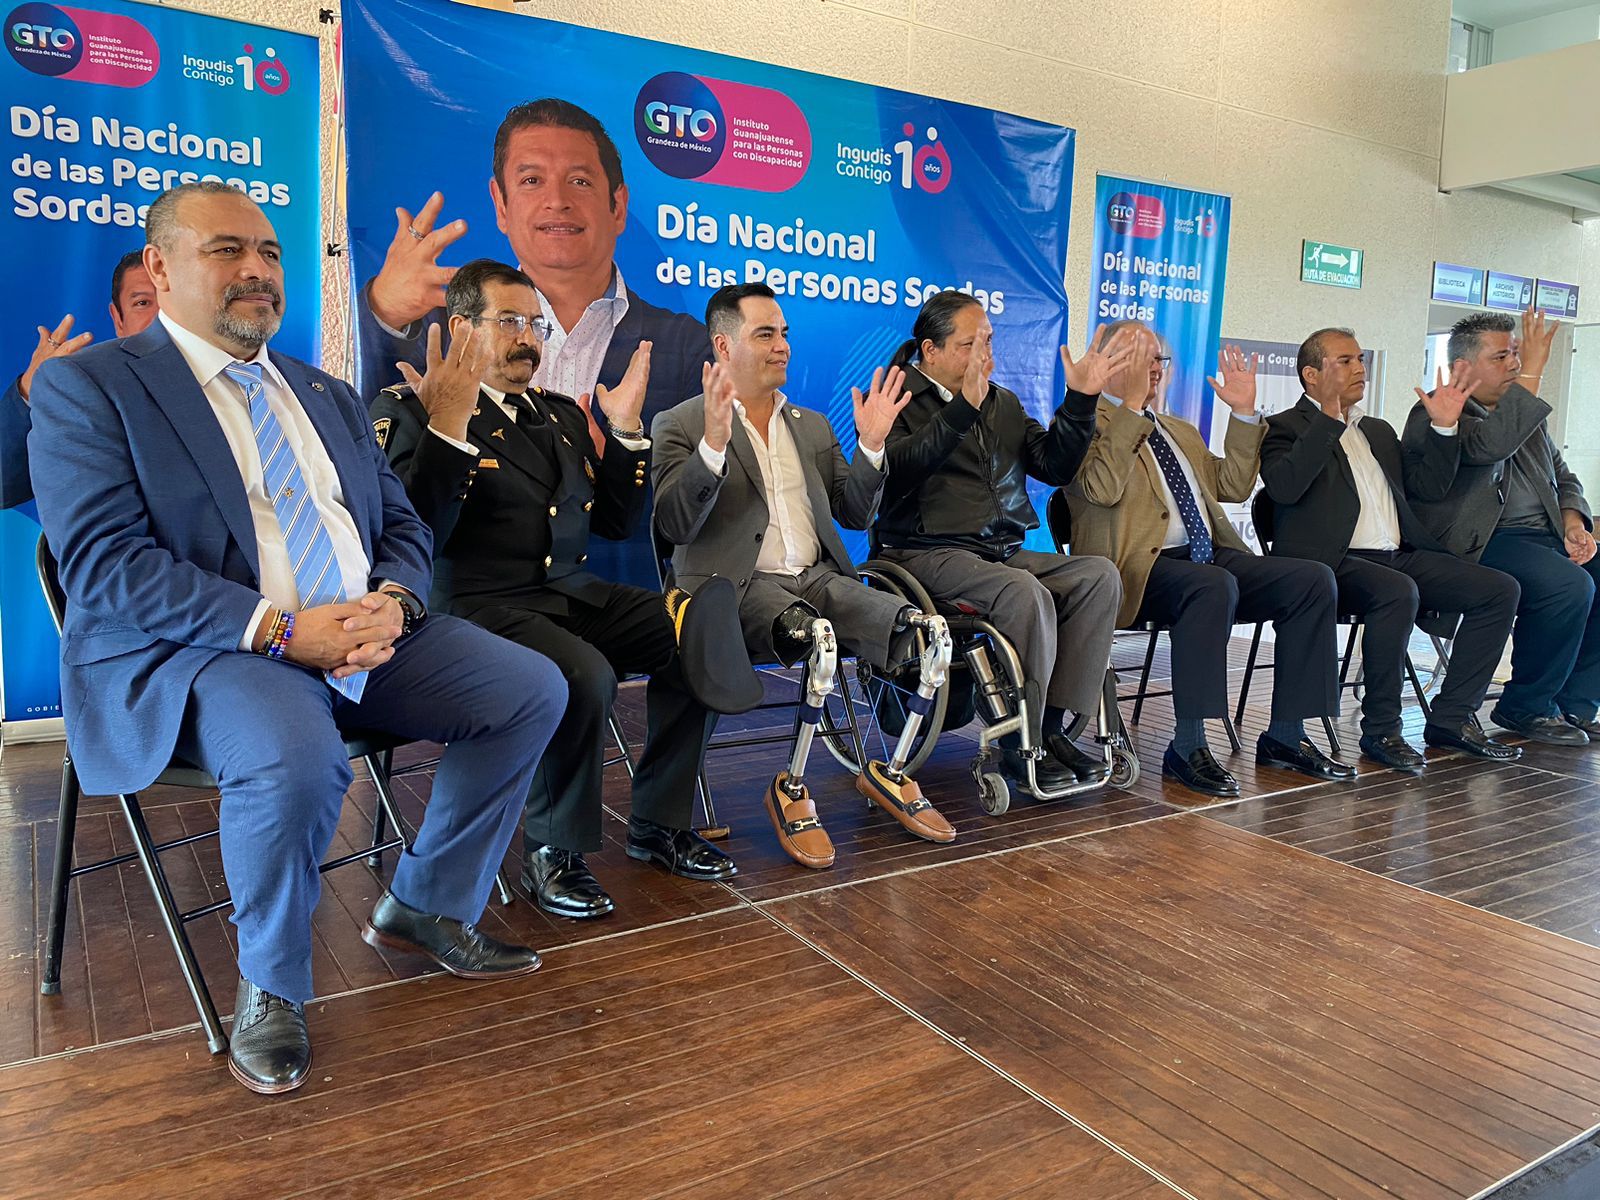 Incorpora Guanajuato 6 nuevas expresiones a la Lengua de Señas INGUDIS